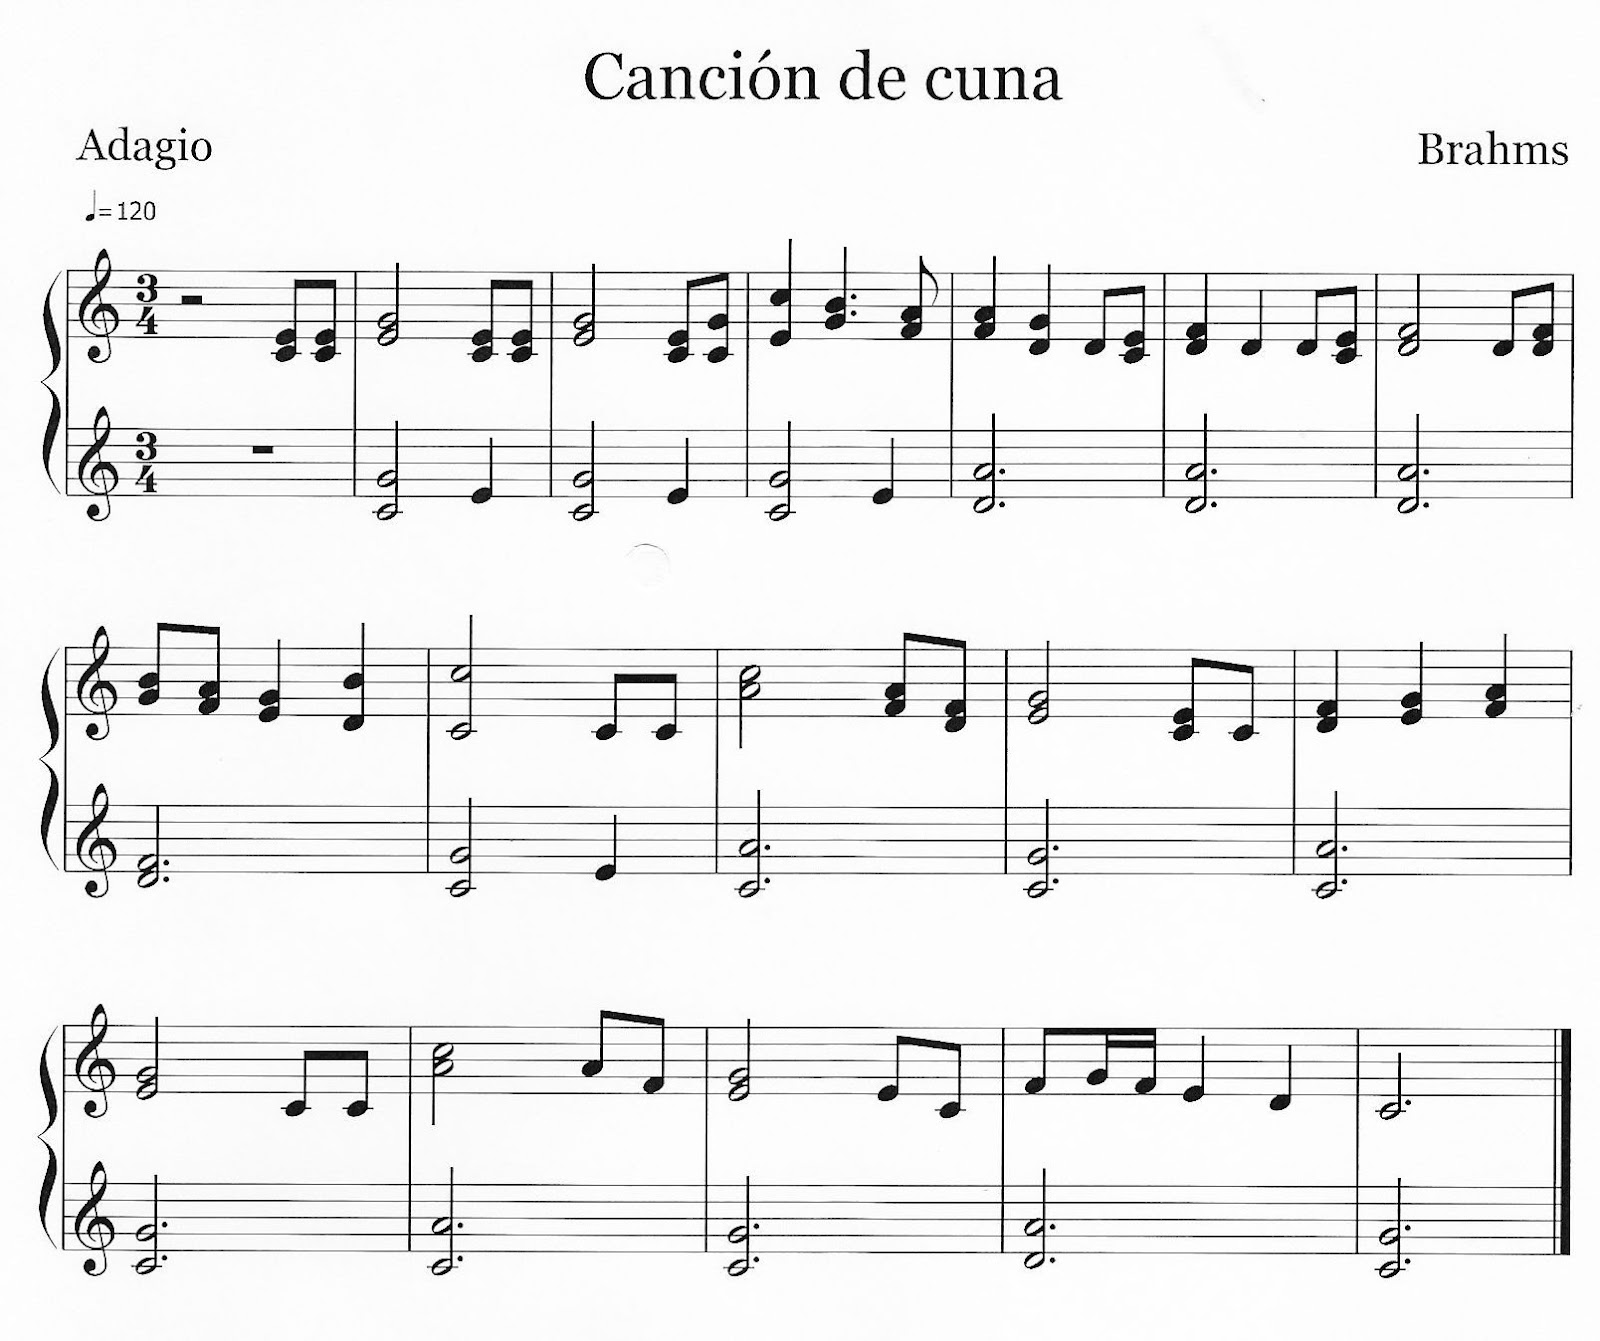 Aula Música: "Canción de cuna" de Brahms. Partitura para instrumentos de aula